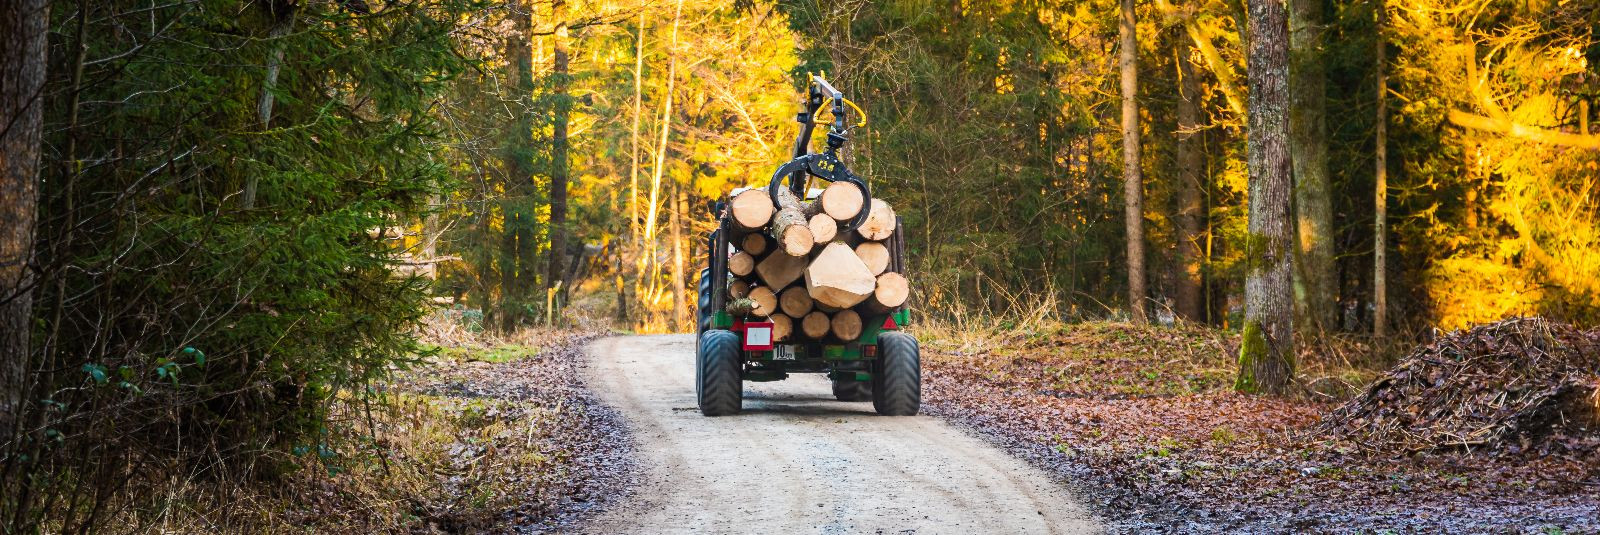 Metsakorraldus on oluline protsess metsamajanduse valdkonnas, mis hõlmab metsaressursside tõhusat haldamist ja planeerimist. Optimeeritud metsakorraldus aitab s